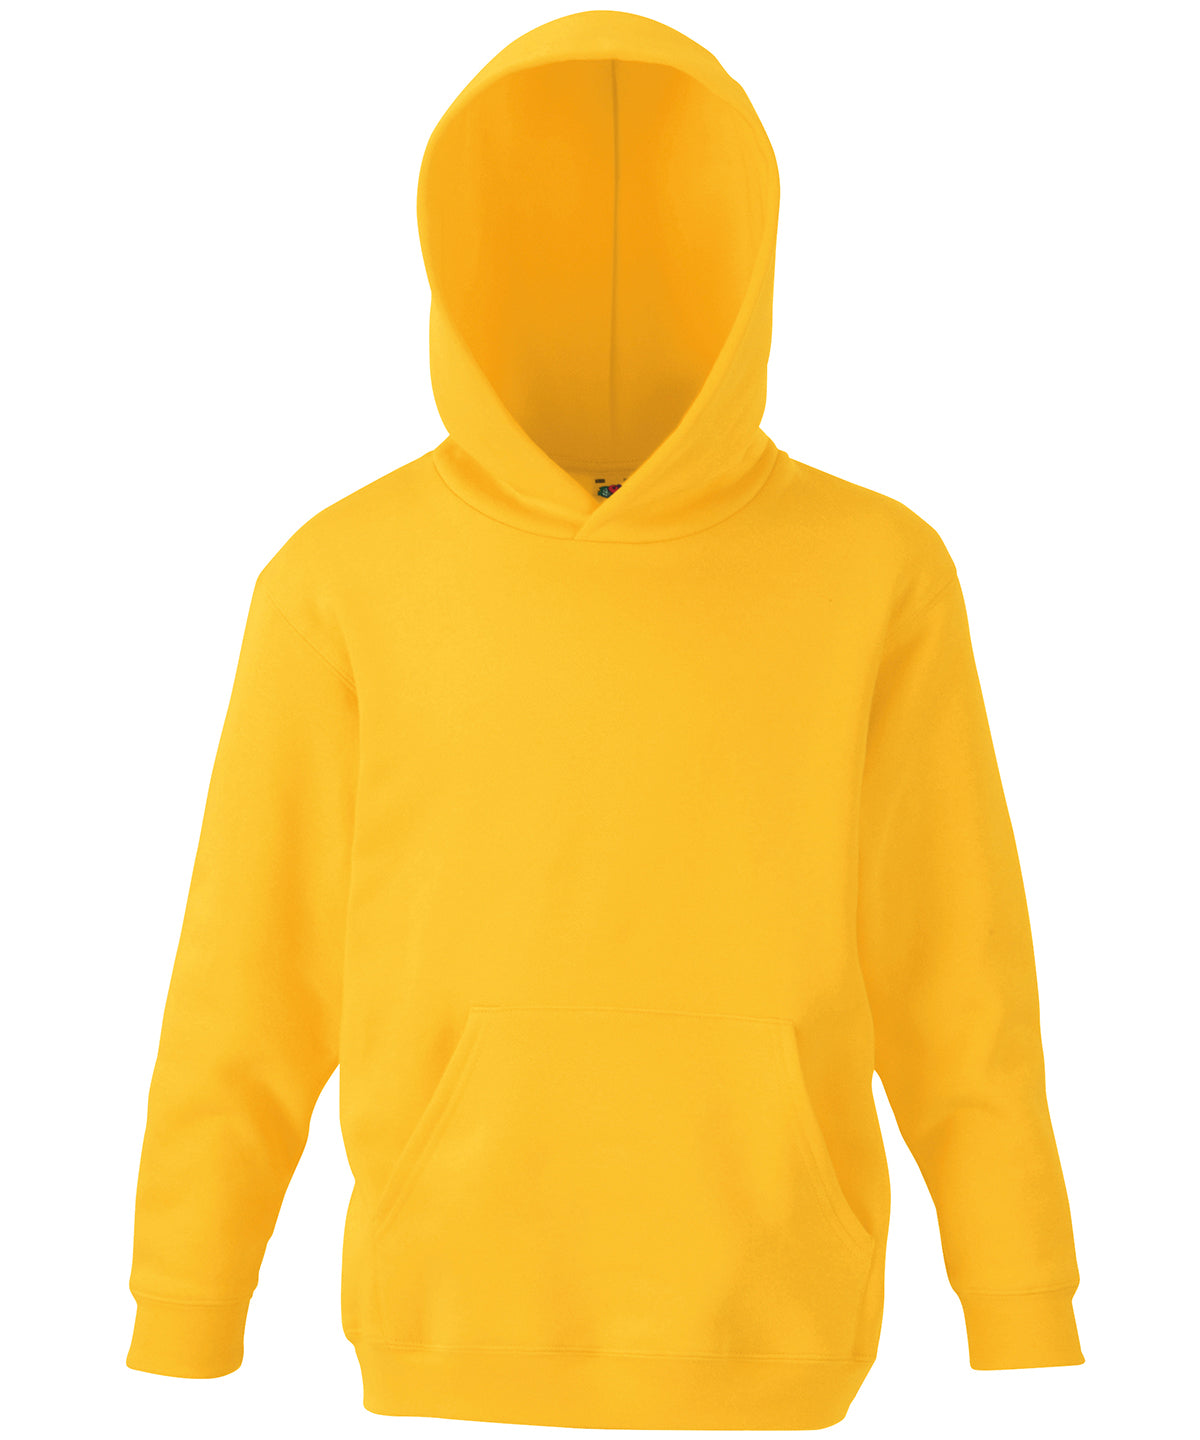 Personalised Hoodies - Bottle Fruit of the Loom Kids classic hooded sweatshirt